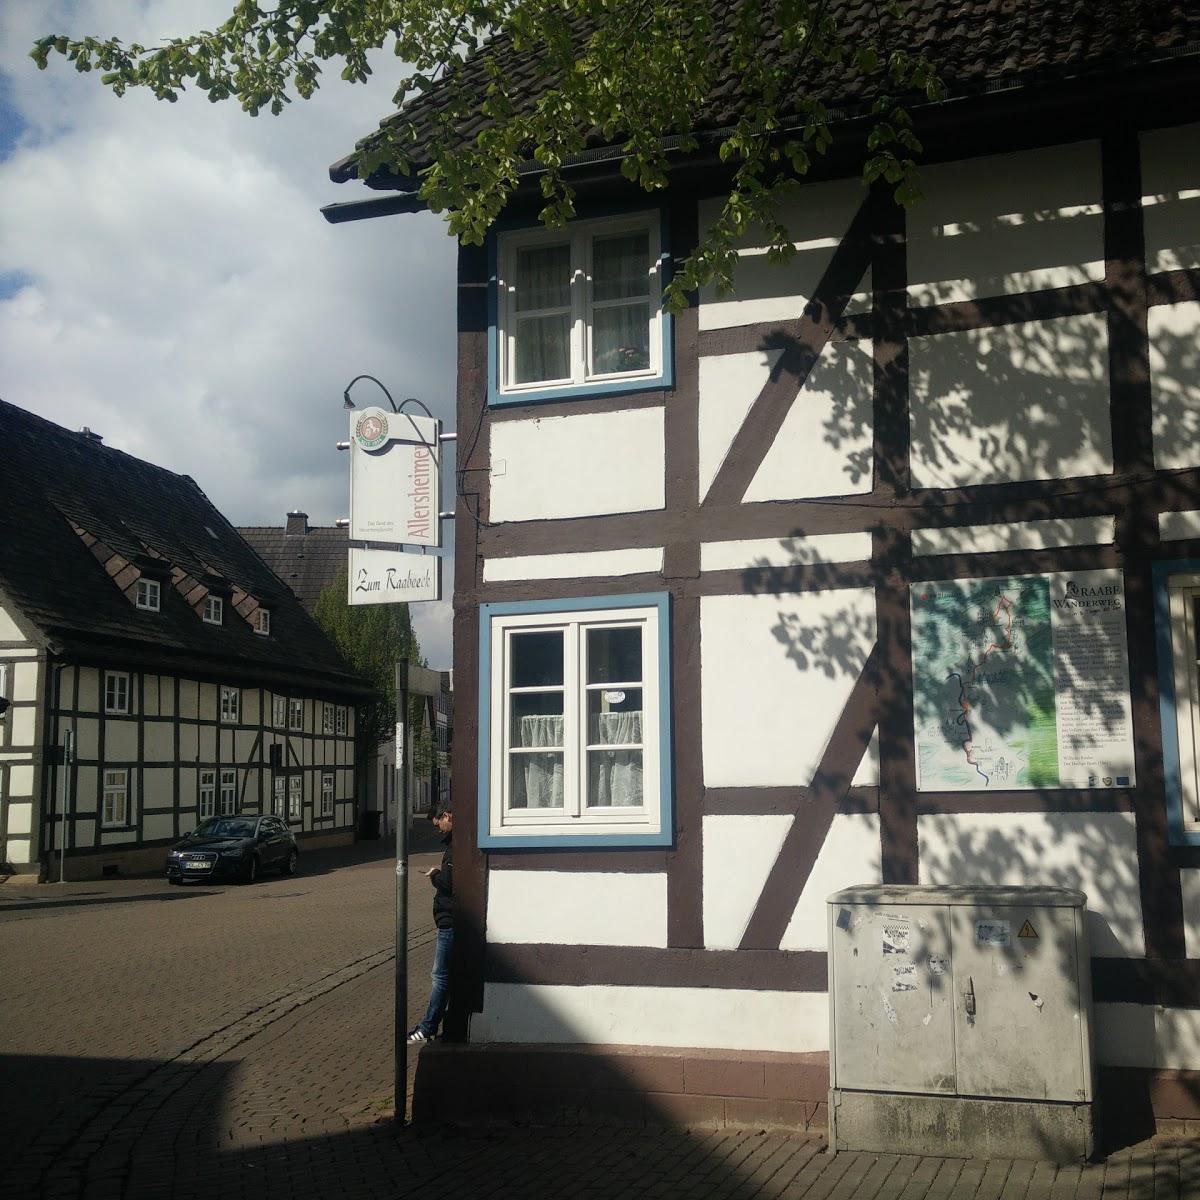 Restaurant "Gaststätte Zum Raabeeck" in Holzminden